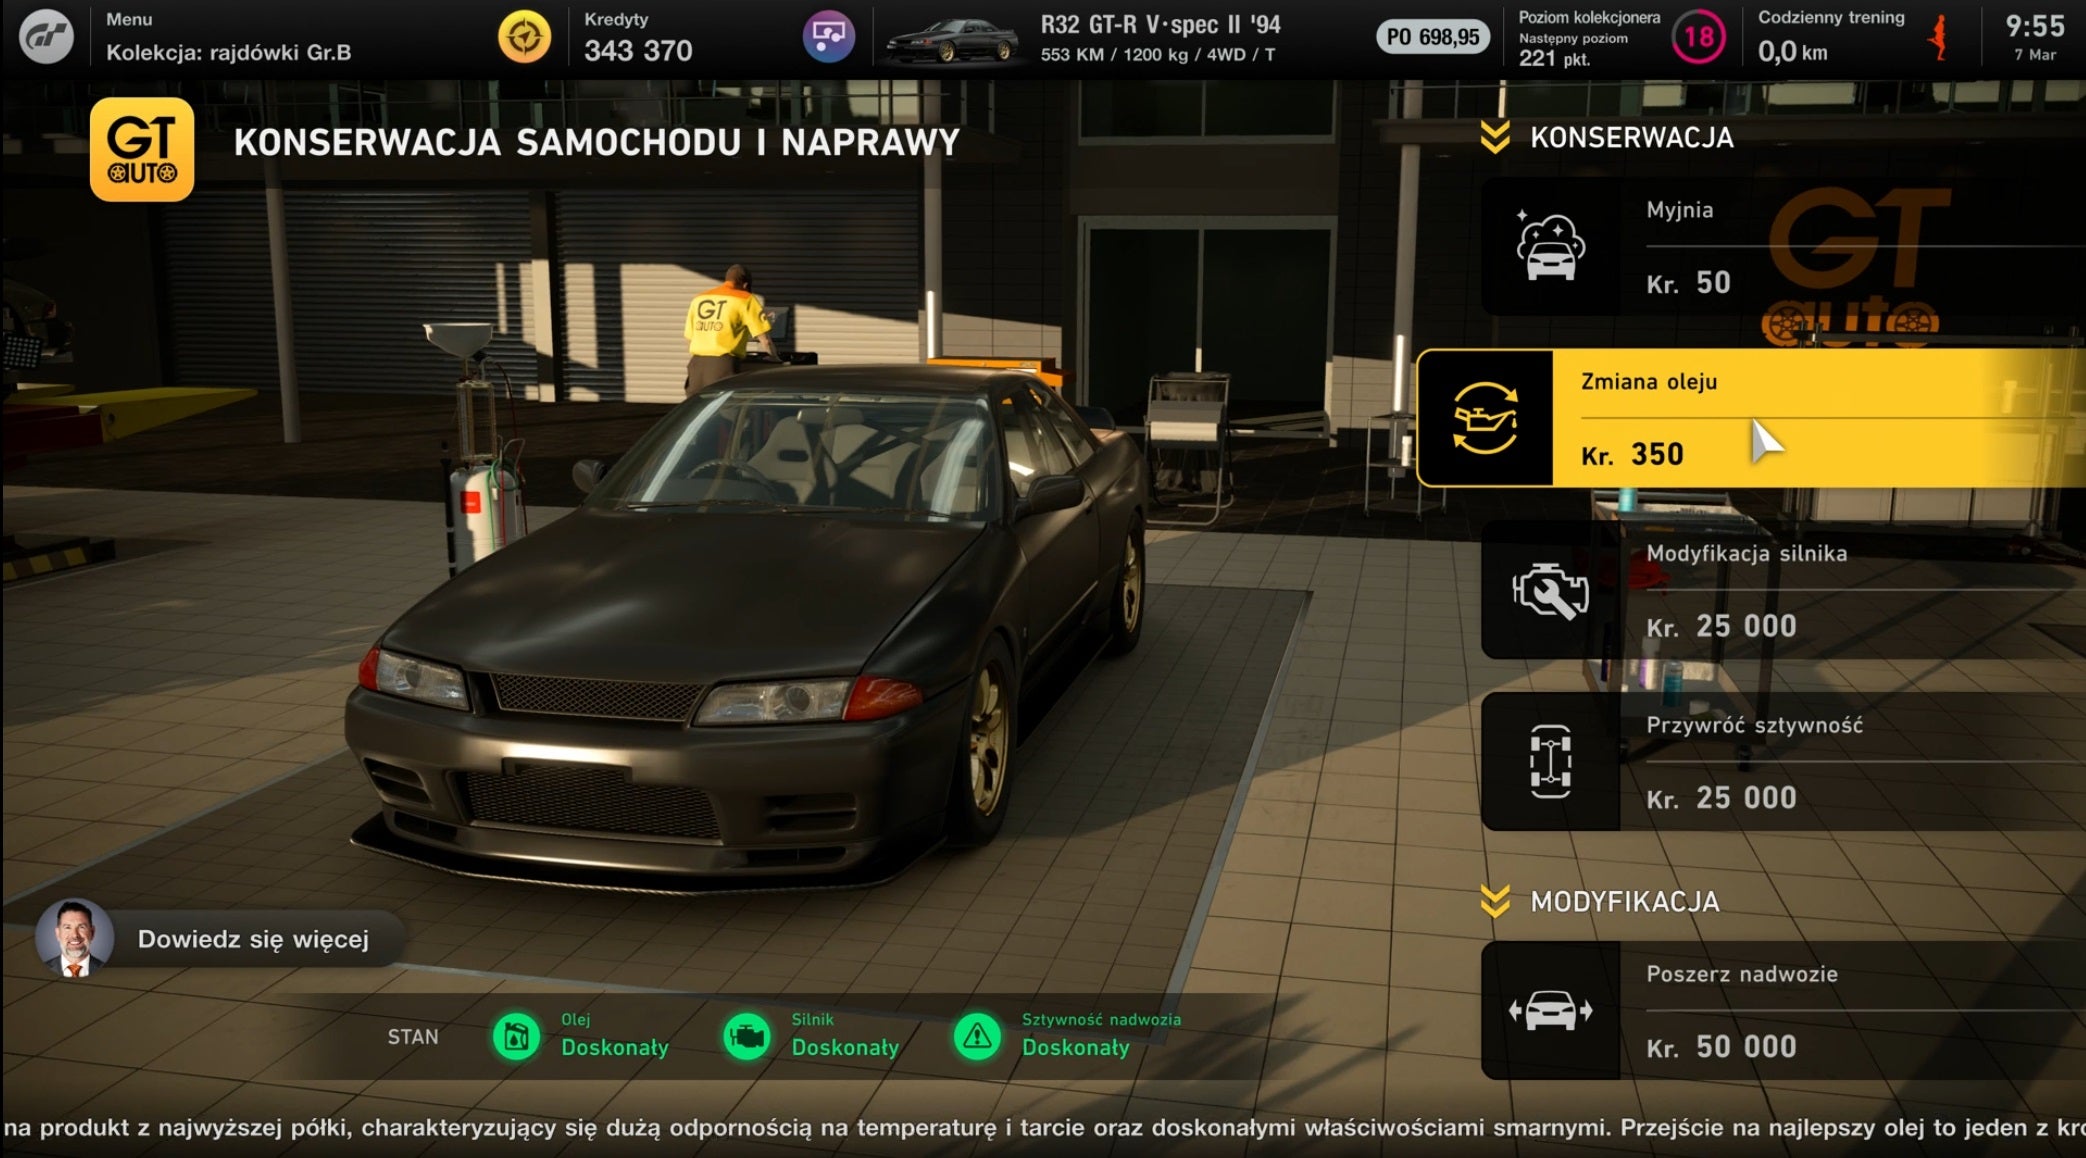 Obrazki dla Gran Turismo 7 - przegląd i serwisowanie